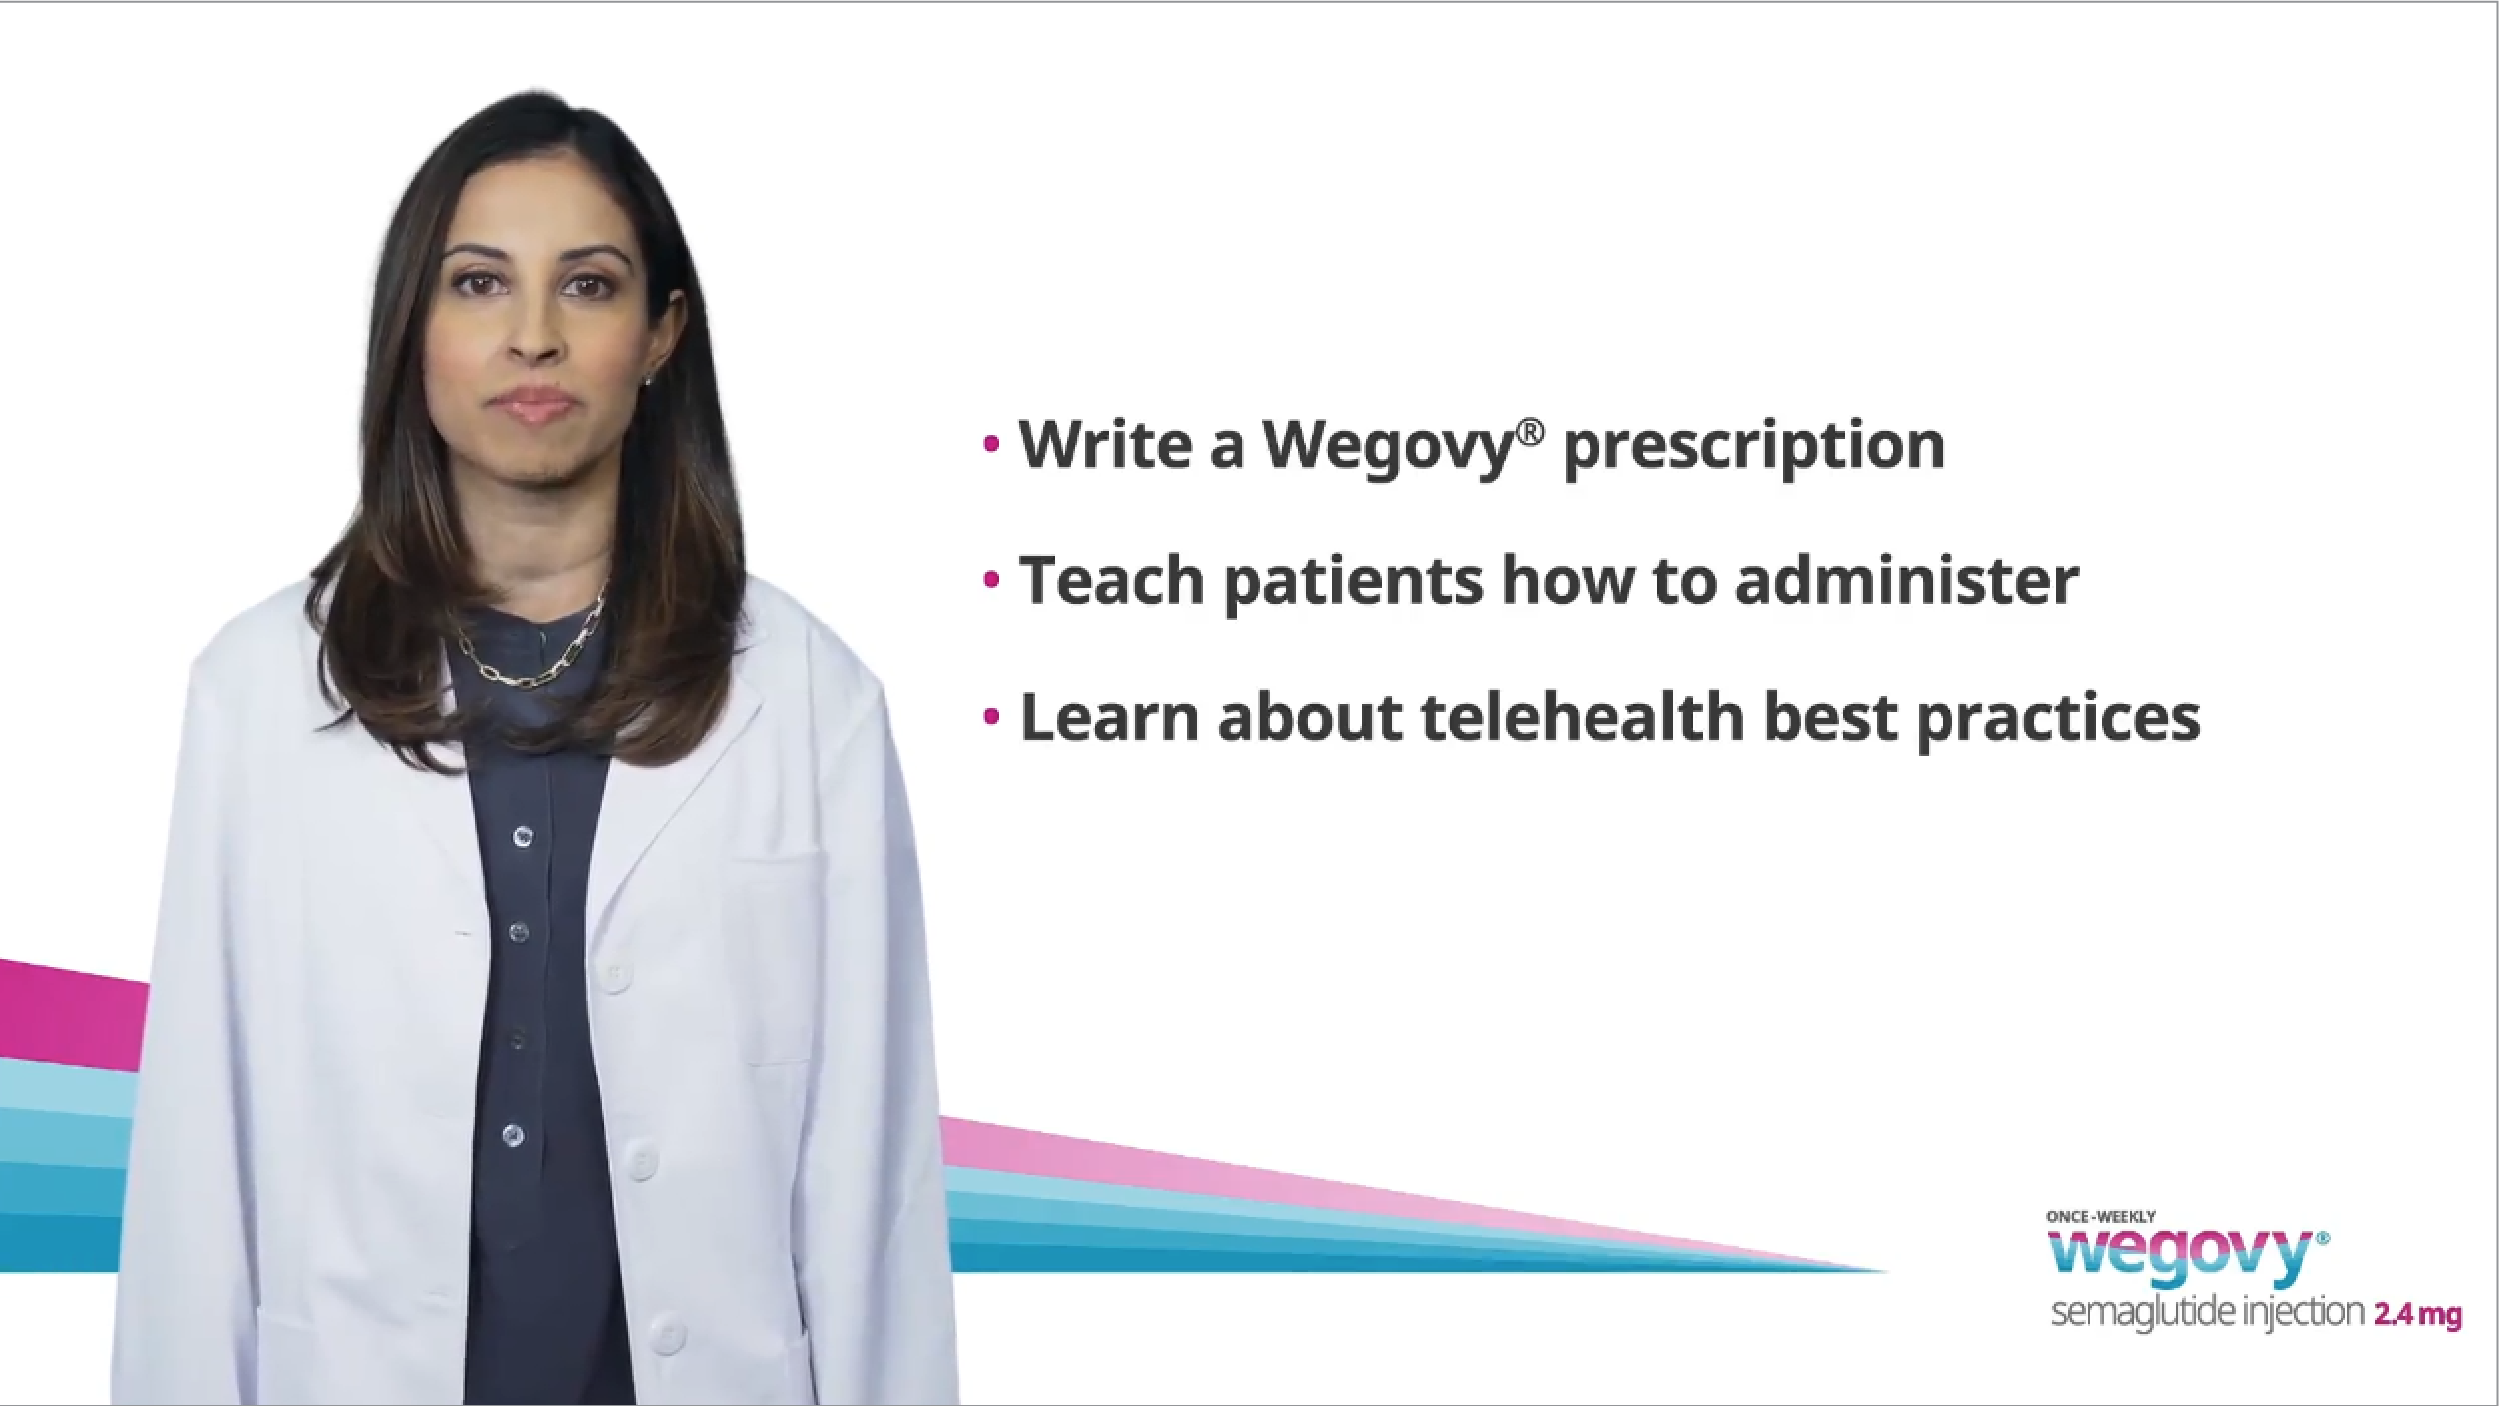 Wegovy® Telehealth Best Practices